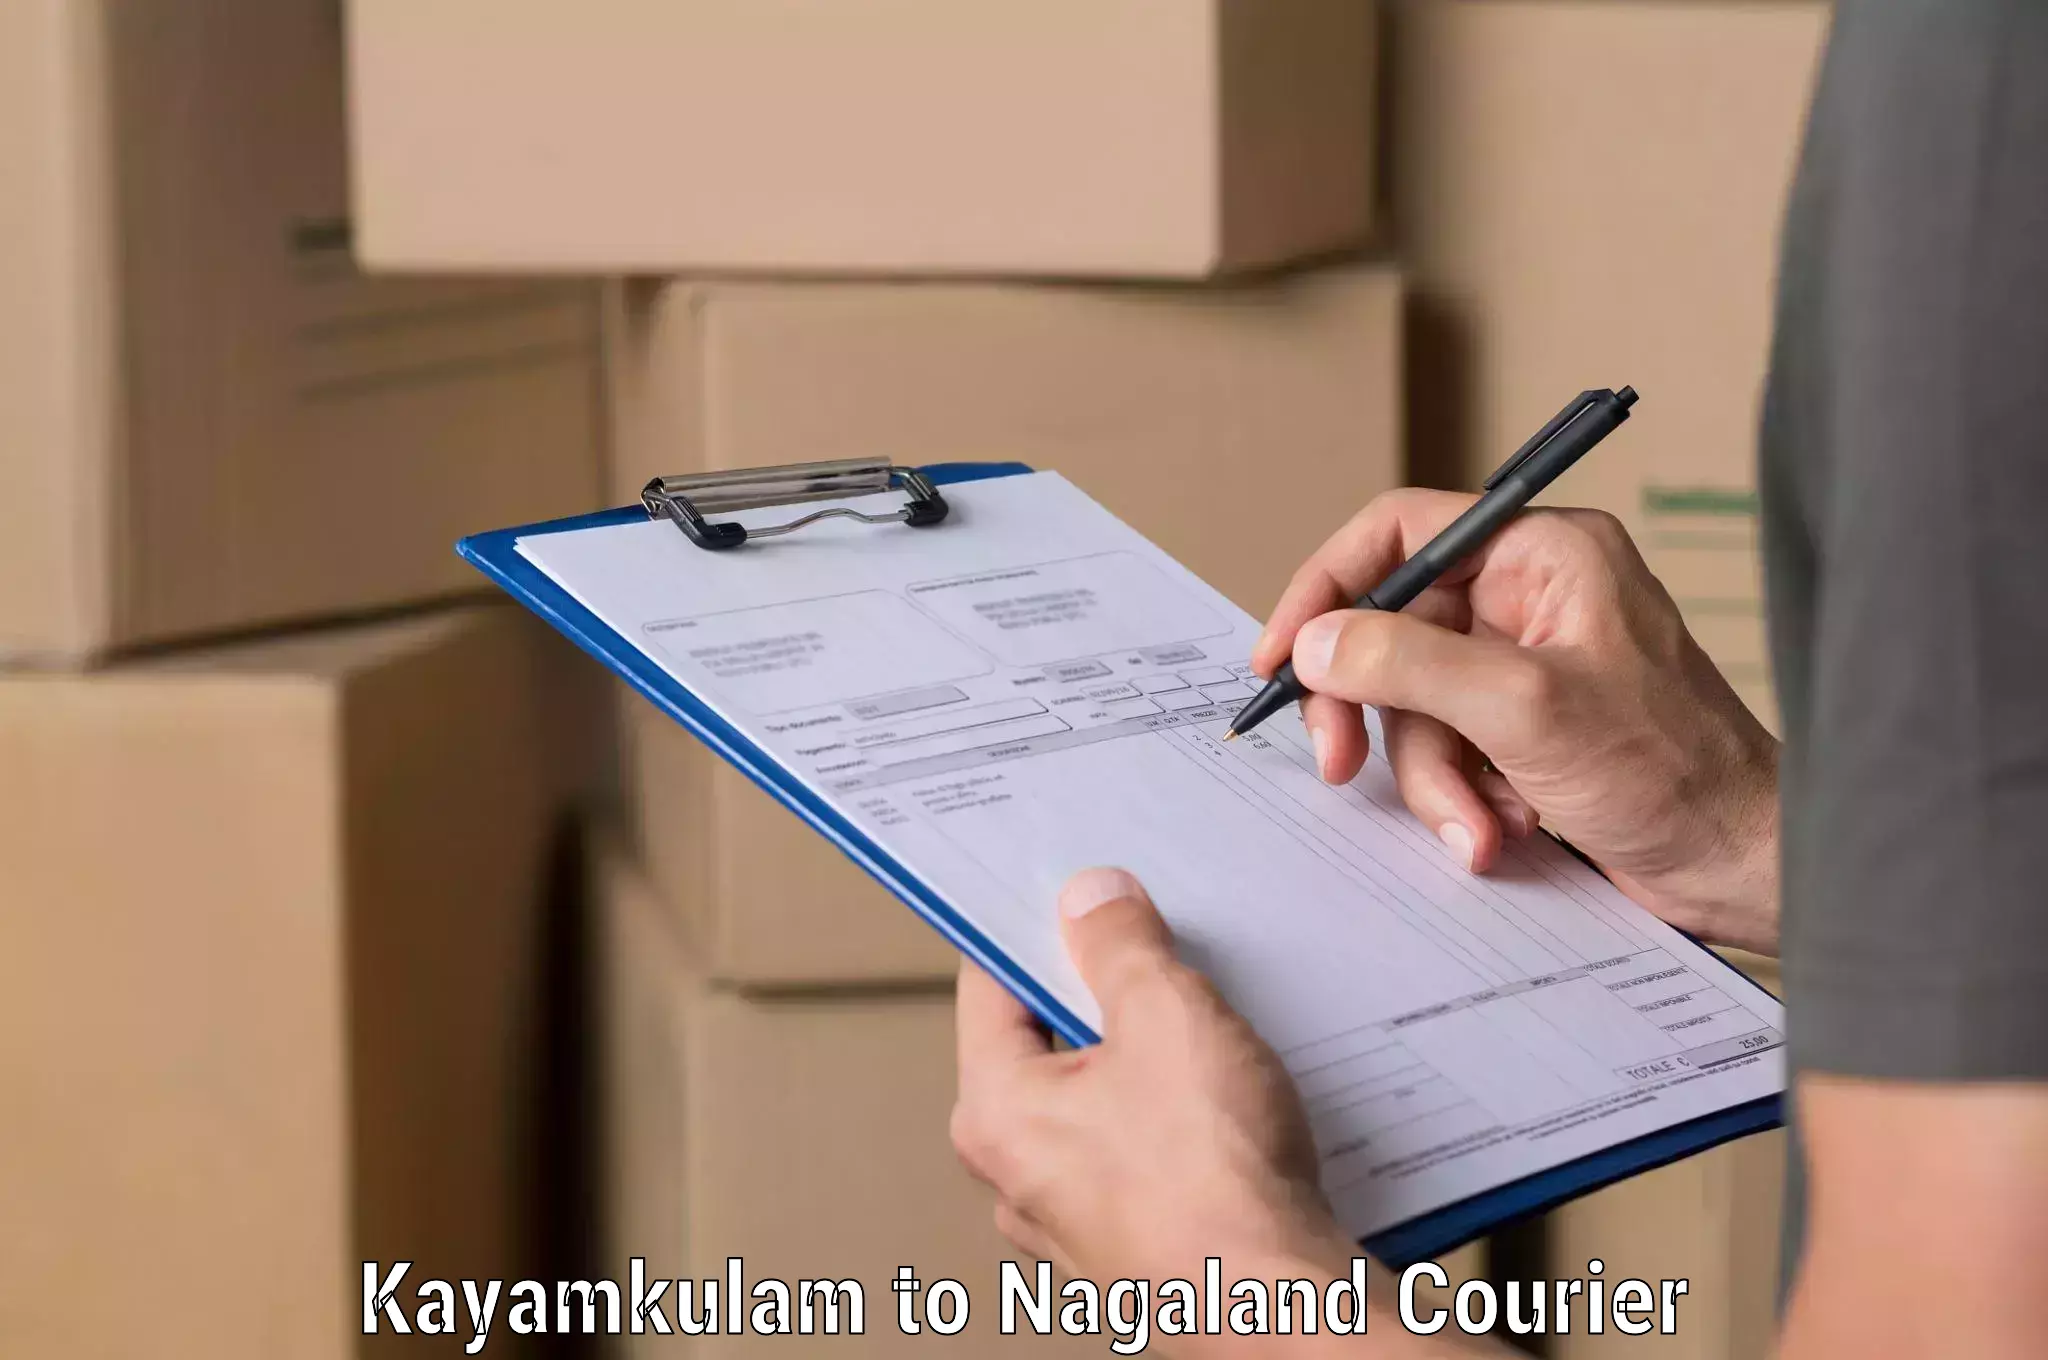 Express logistics providers Kayamkulam to Kiphire